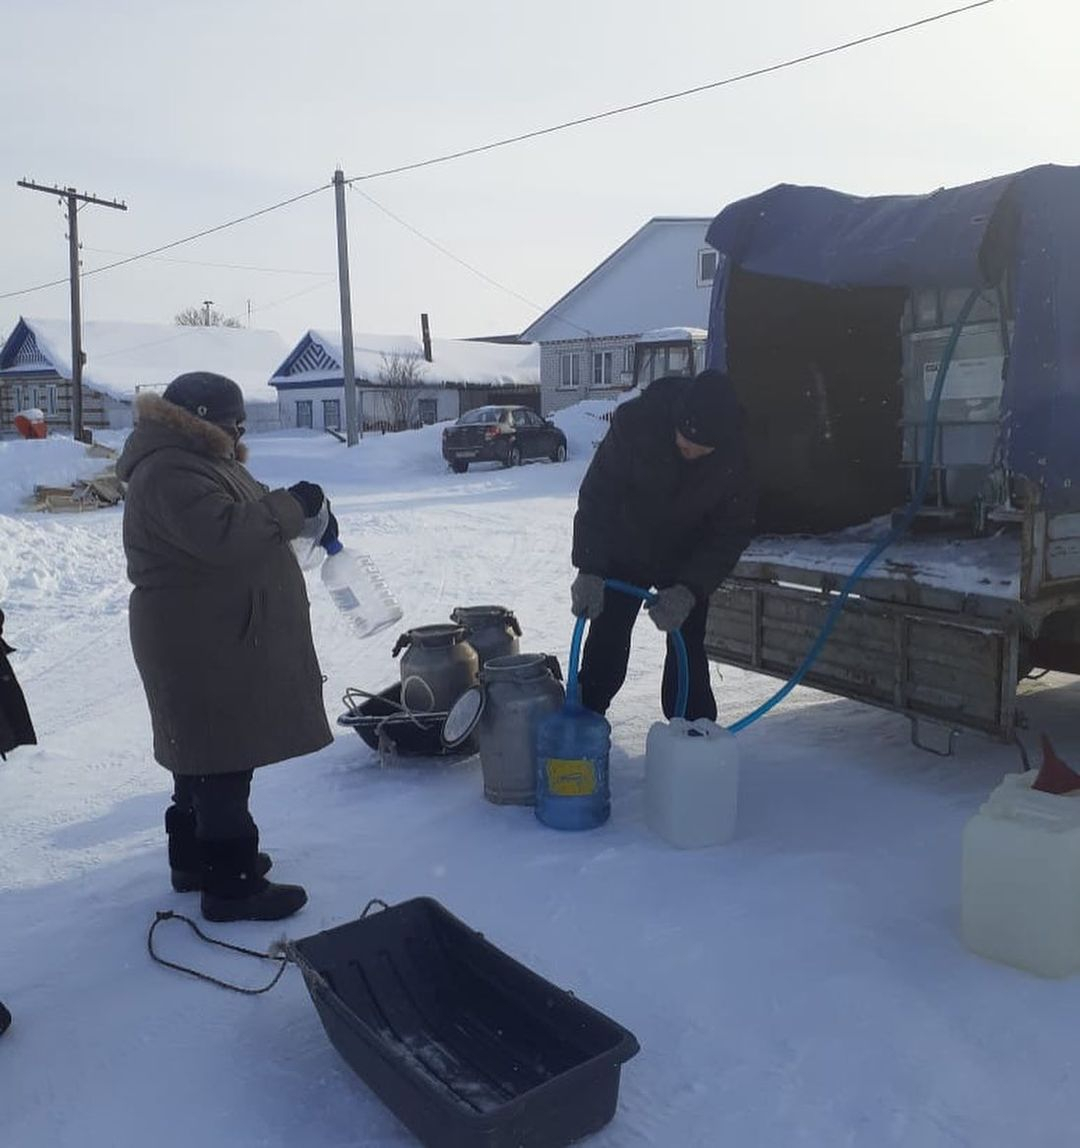 Жителям деревни Красночетайского района привезли воду, чтобы они не пили из проруби